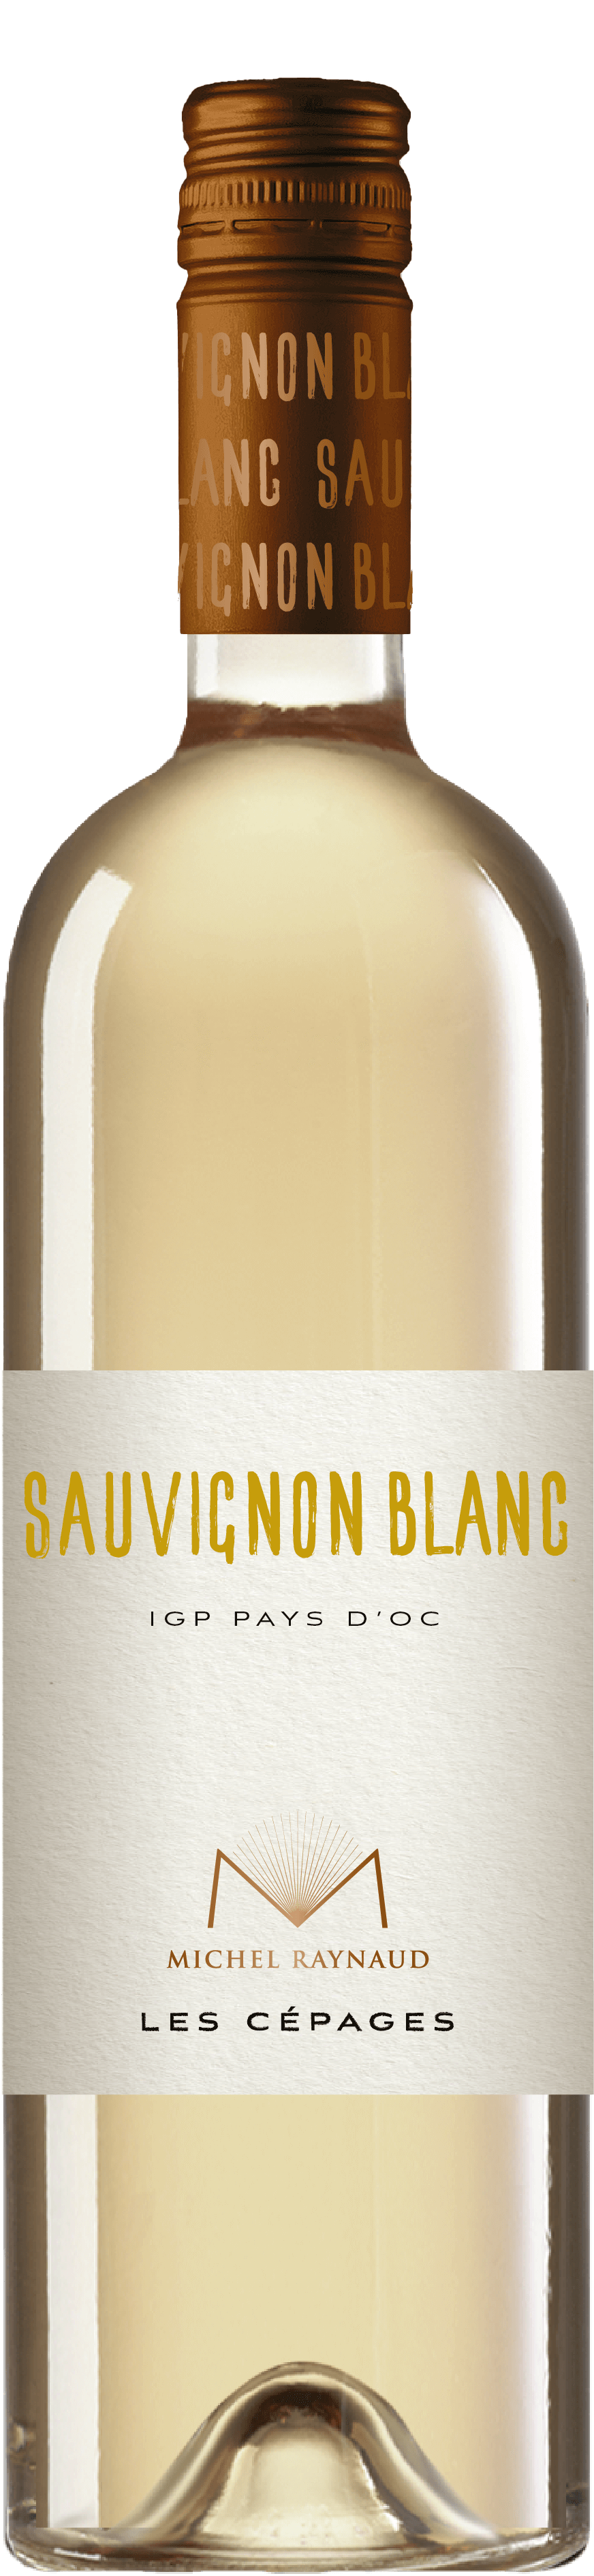 Sauvignon Blanc – IGP Pays d’Oc blanc - Michel Raynaud